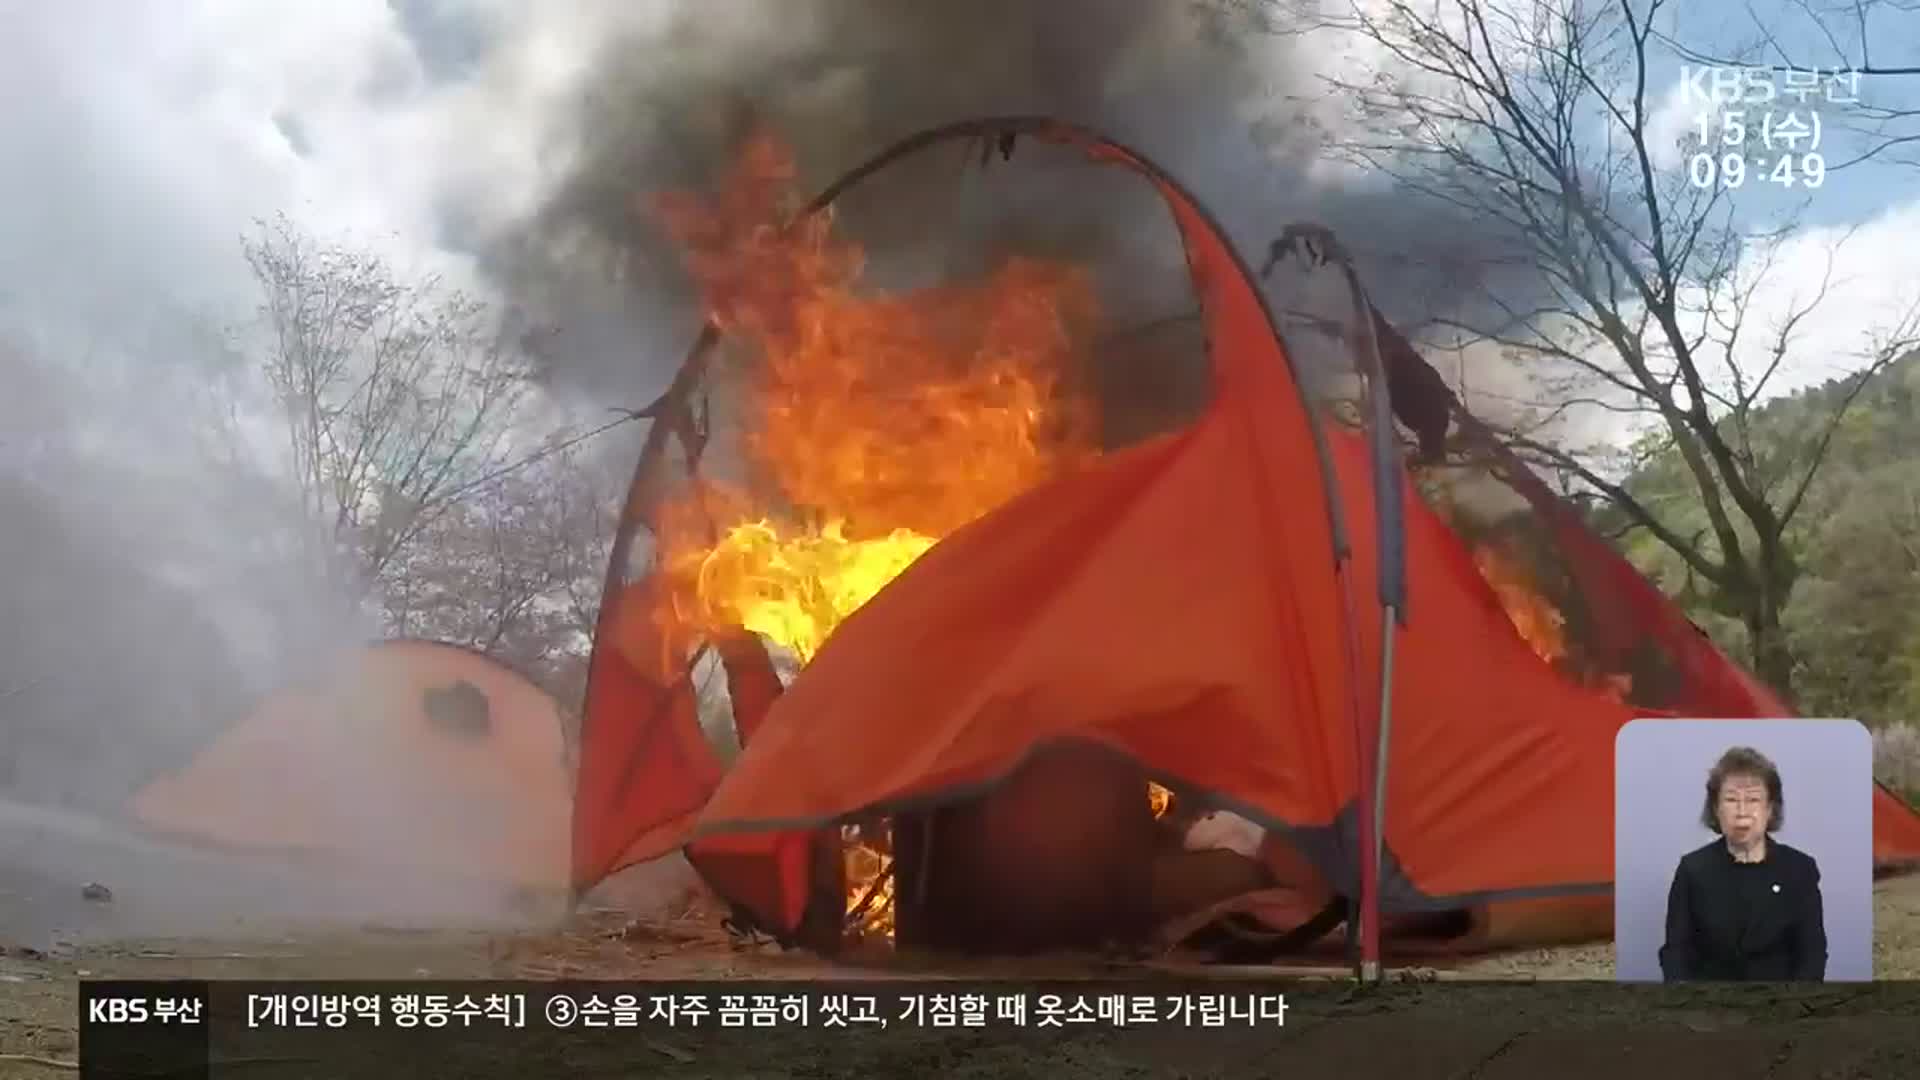 차박 열풍 속 구매한 텐트, 불이 난다면?